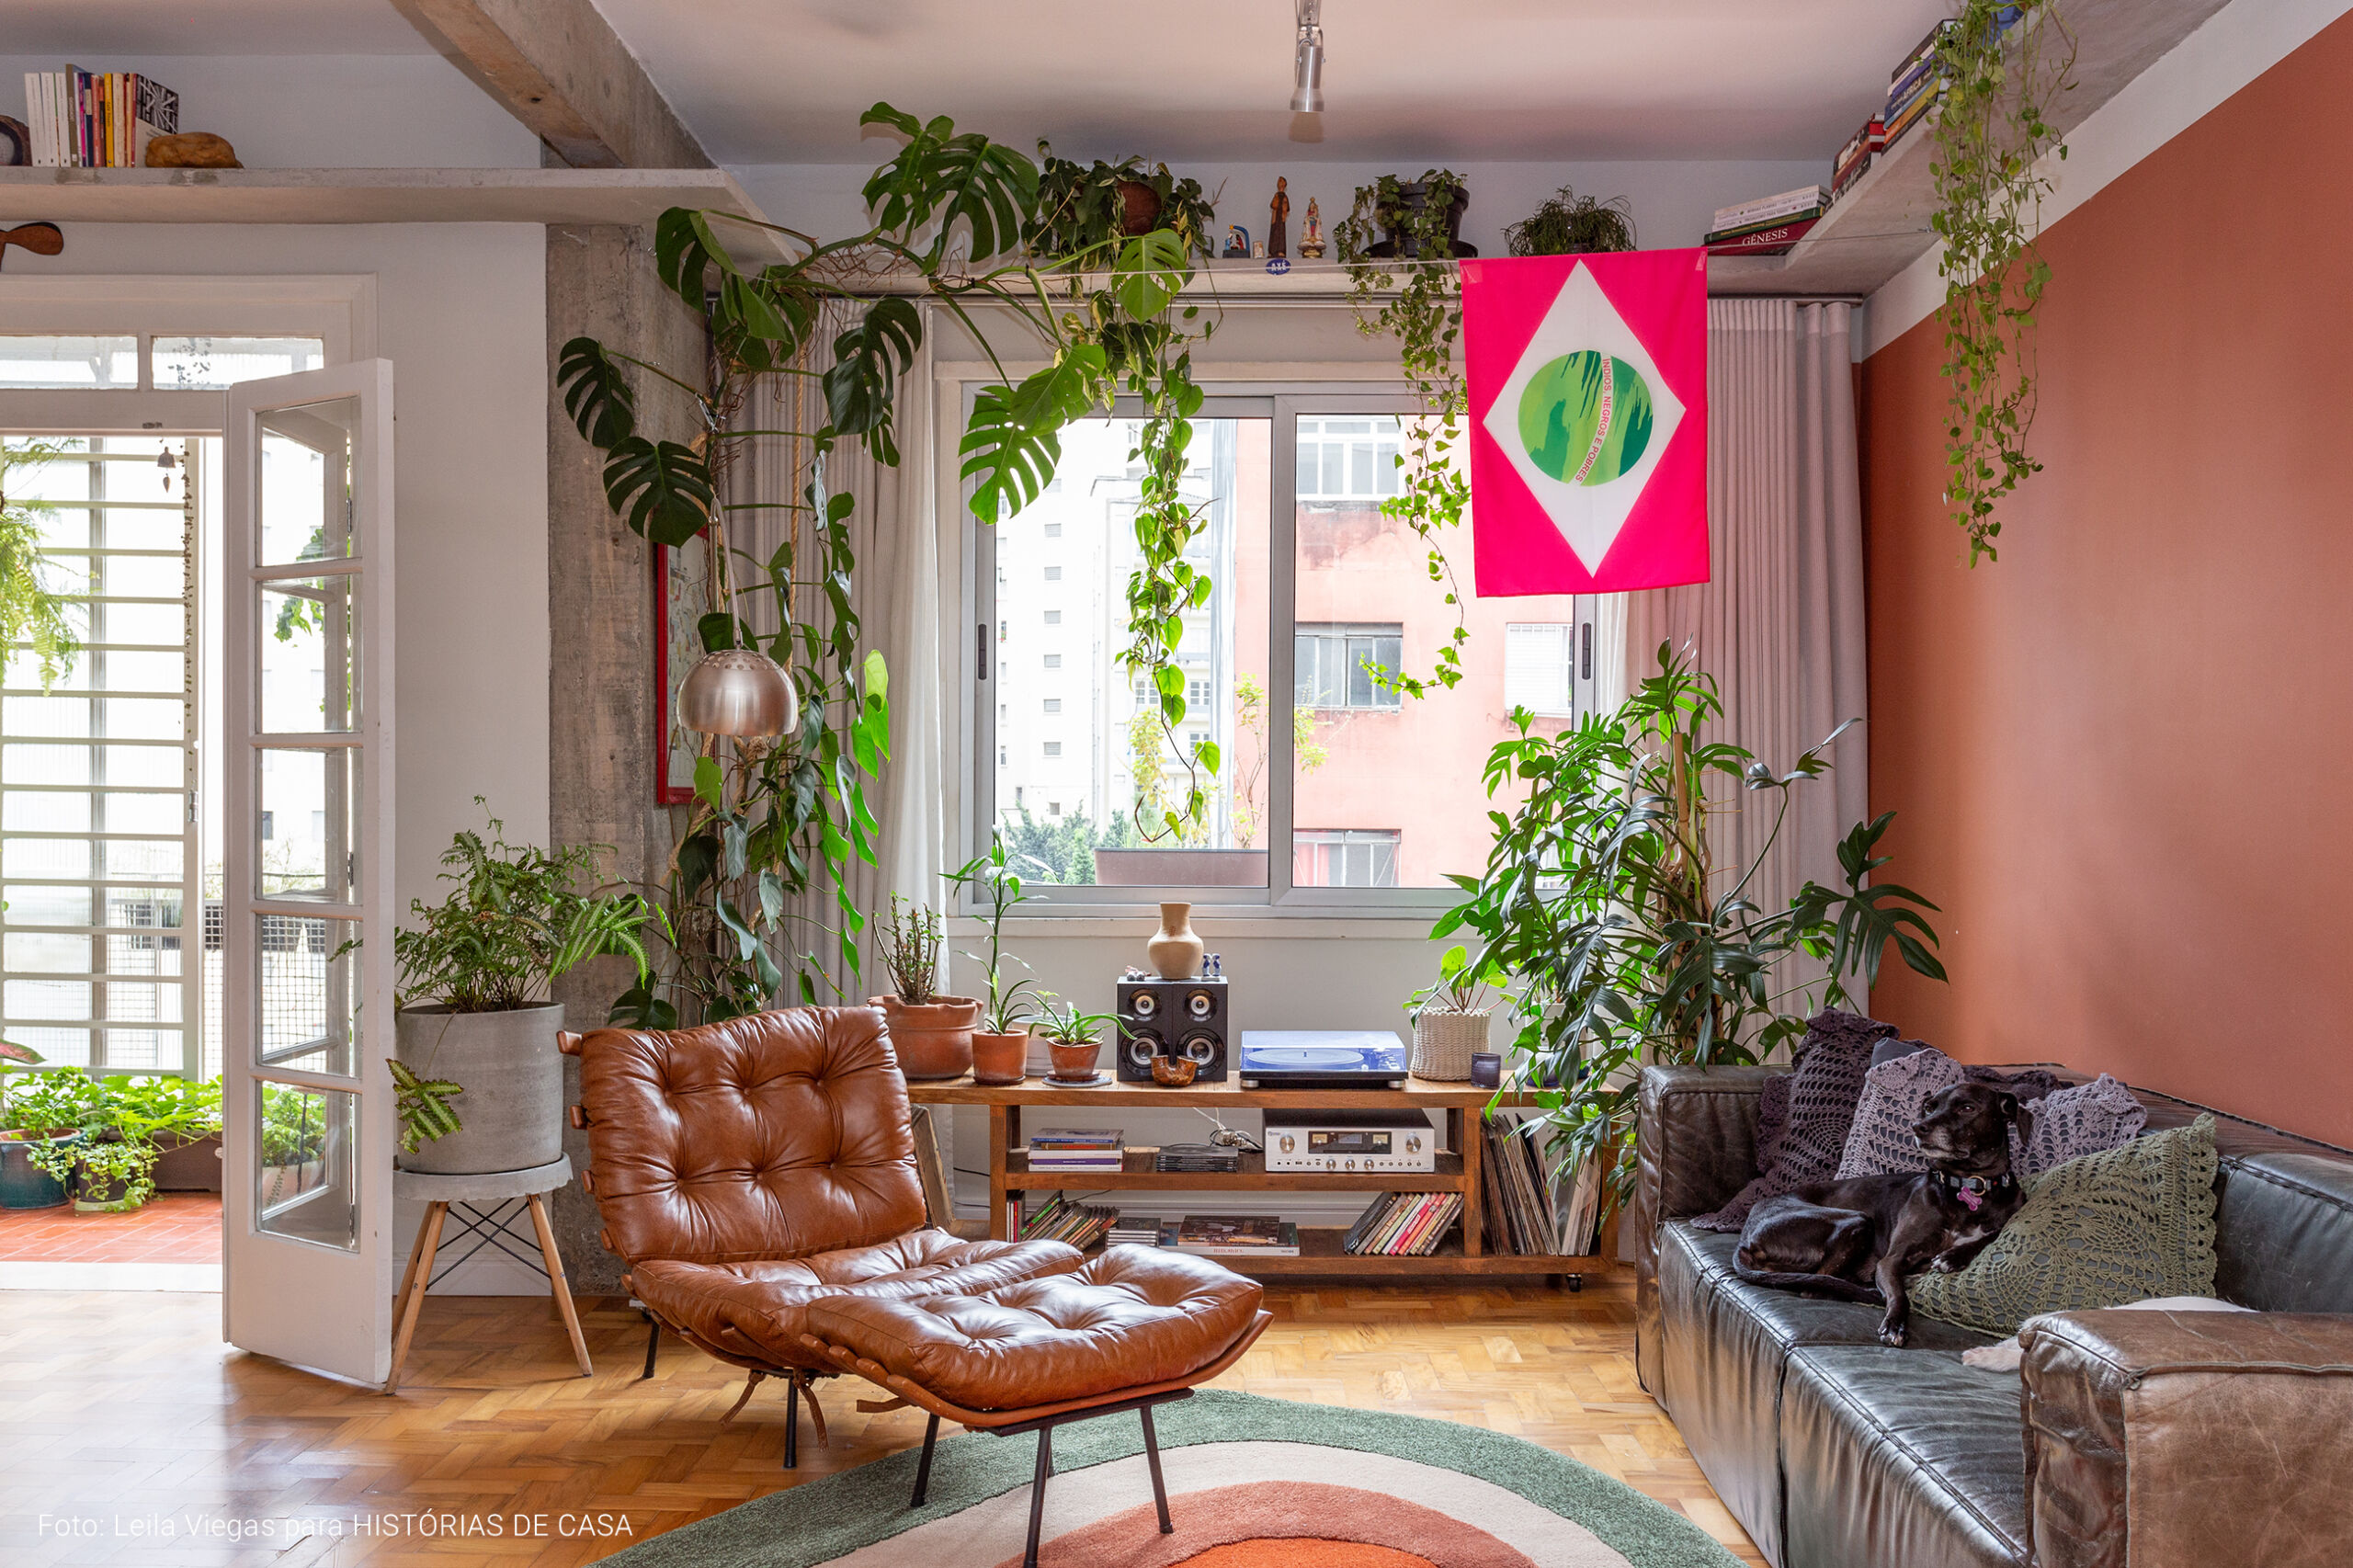 Apartamento com ambientes integrados após reforma e muitas plantas na decoração.